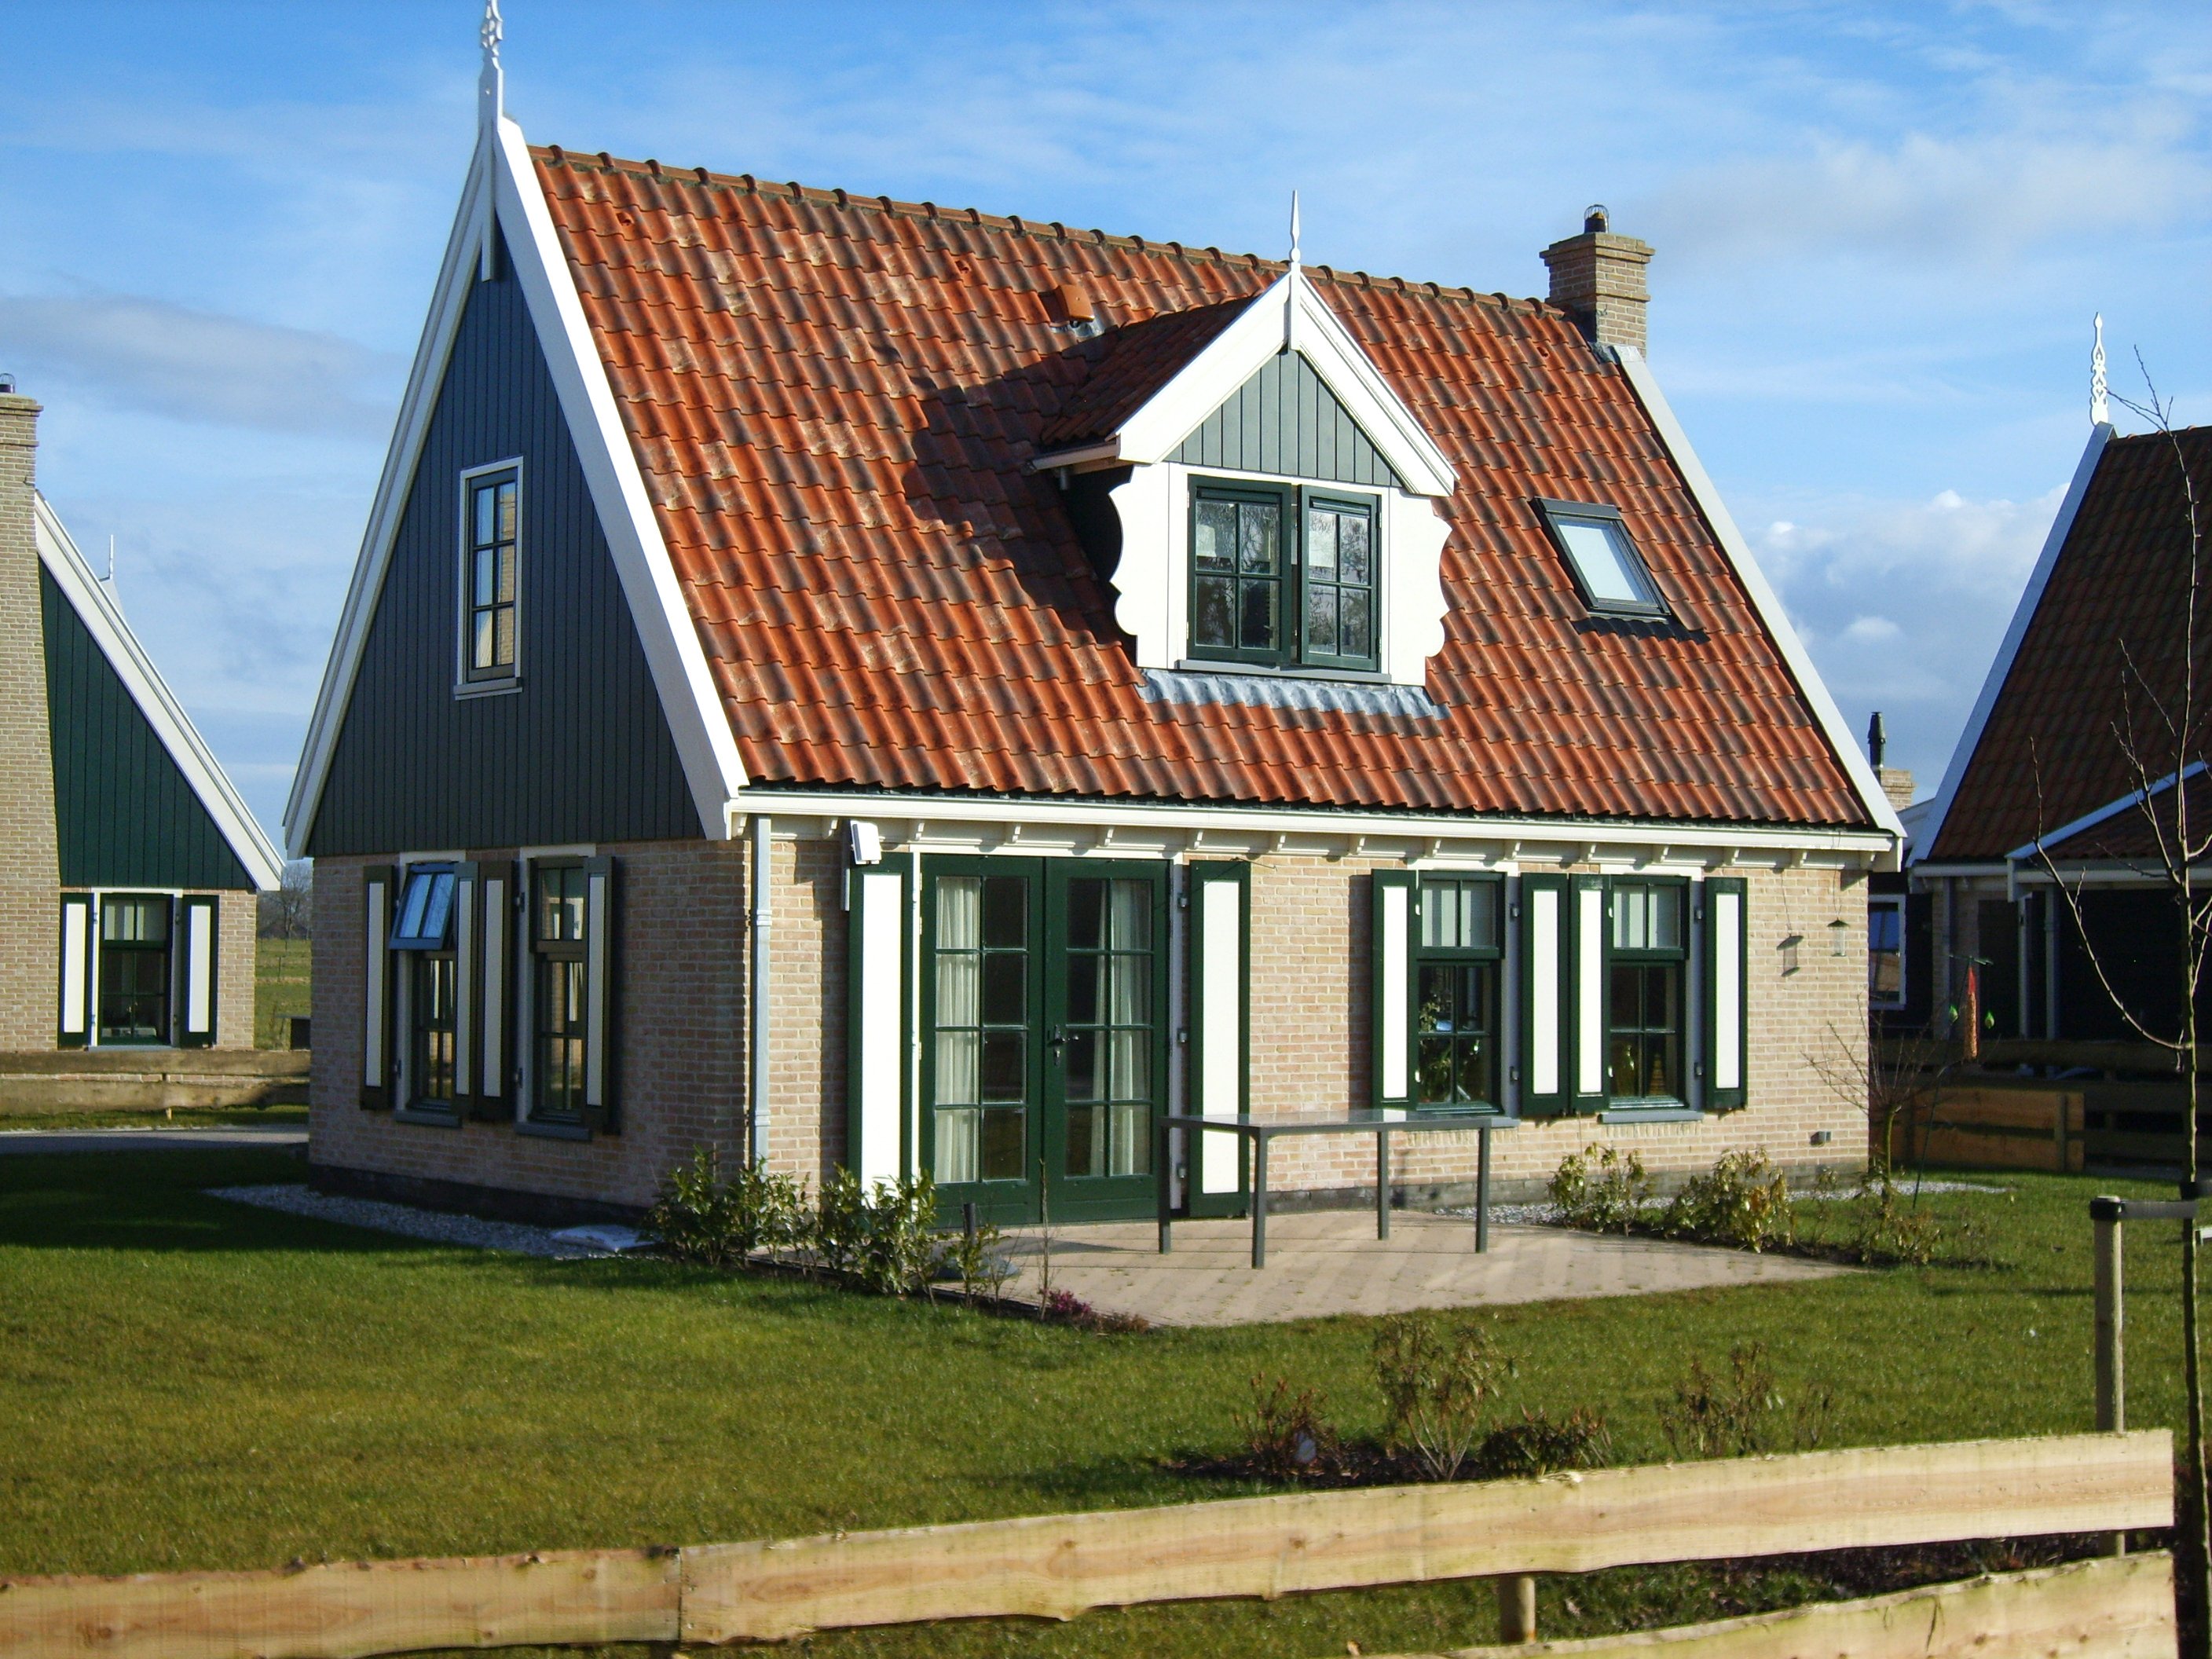 Голландская дом 3. Домик в голландском стиле. Голландский стиль в архитектуре. Фасад дома в голландском стиле. Фасады голландских домов.